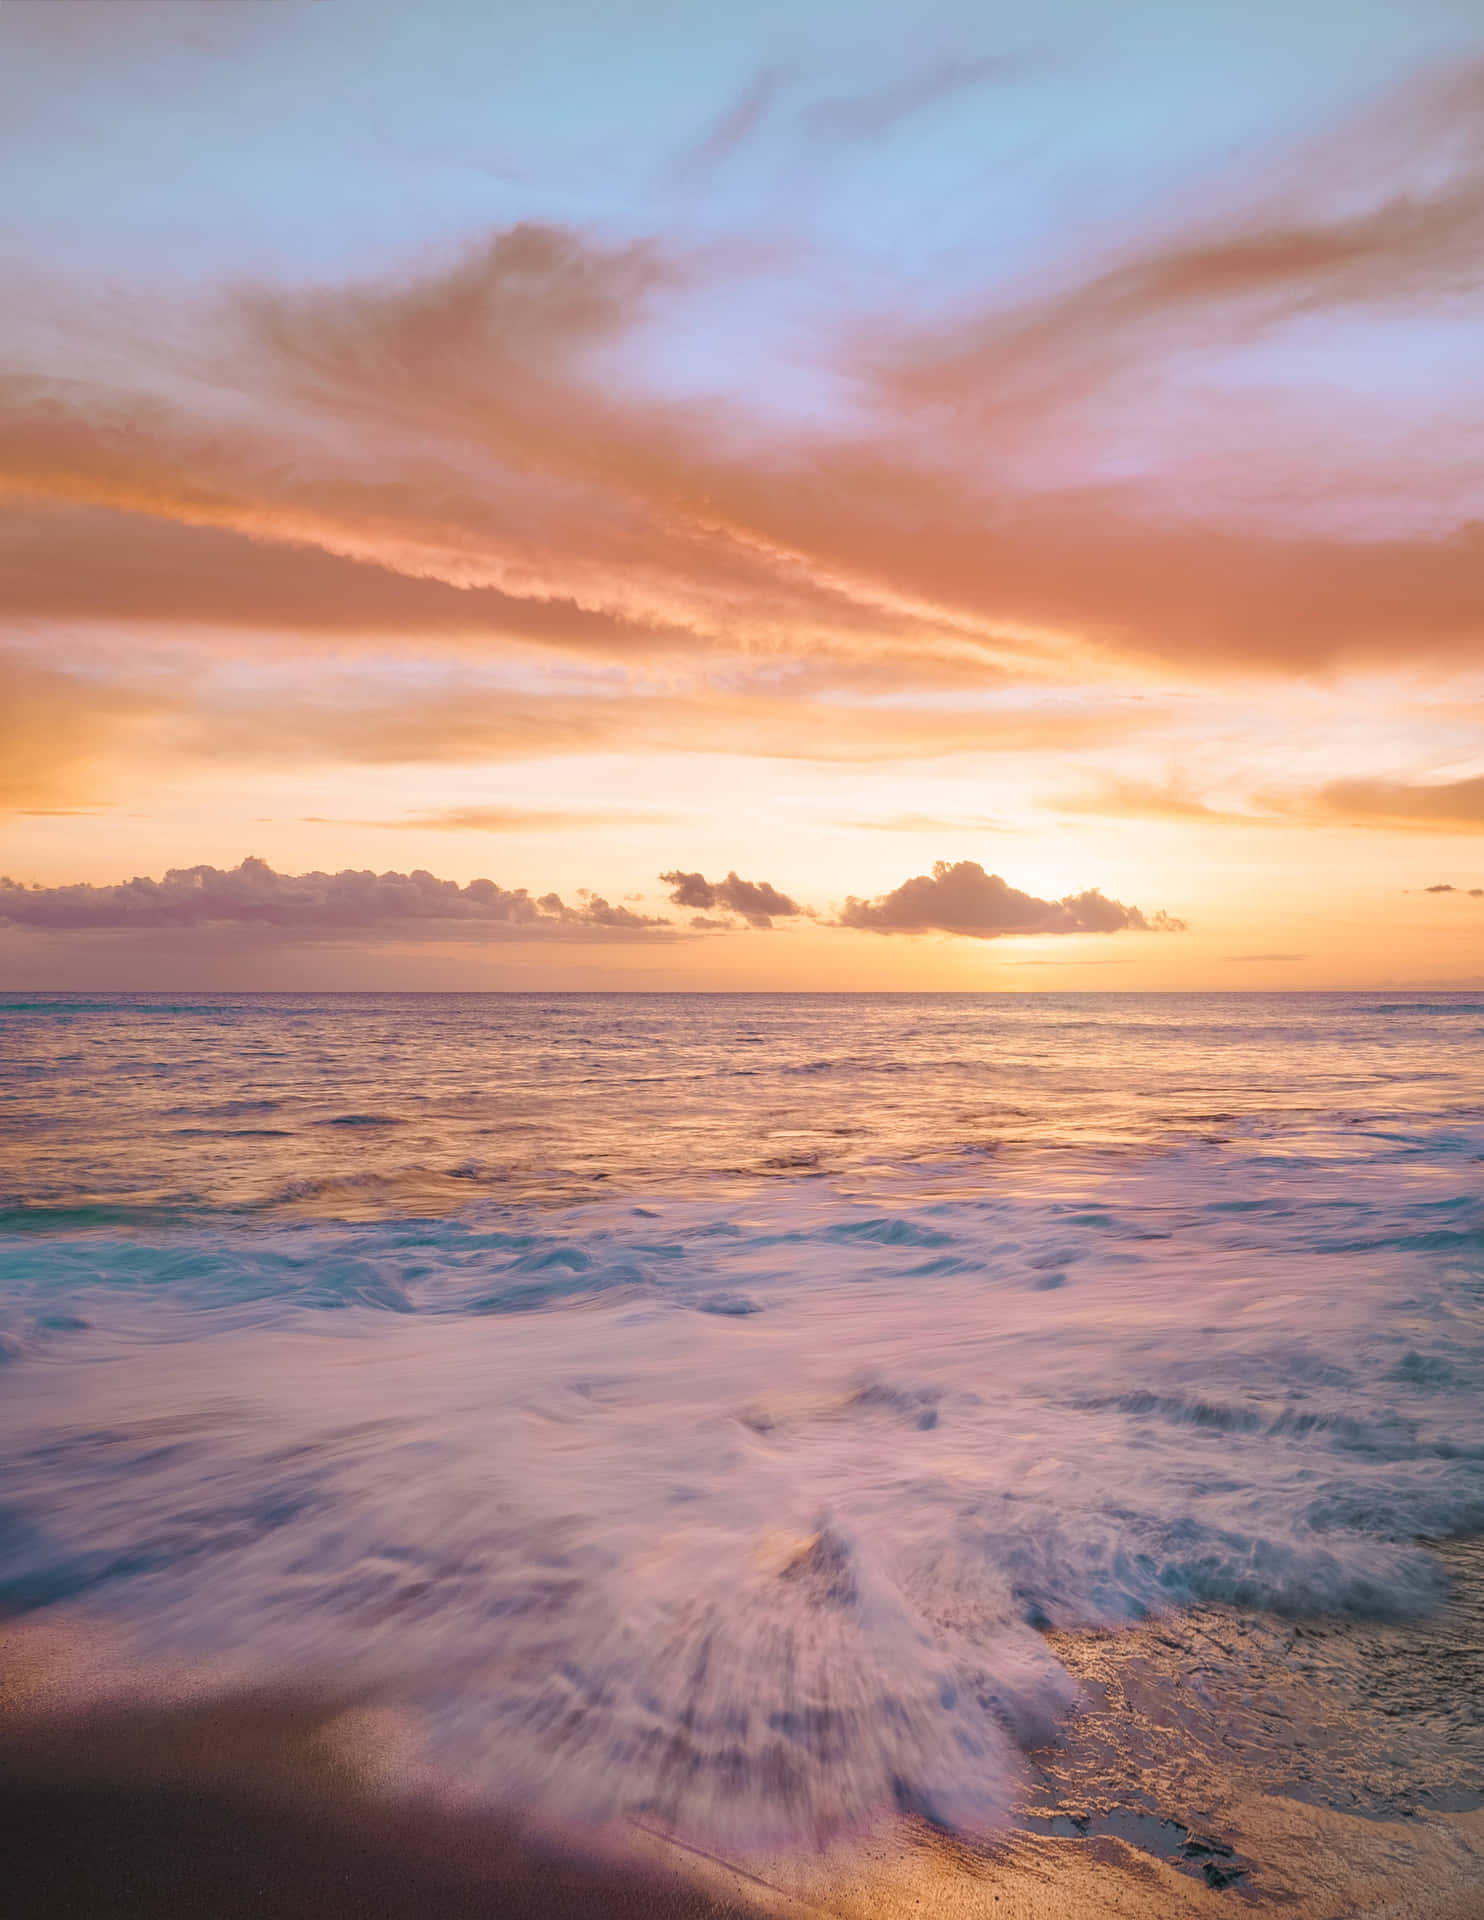 Einidyllischer Strandhimmel Balanciert Die Blauen Und Cremefarbenen Töne Eines Ruhigen Tages Aus. Wallpaper